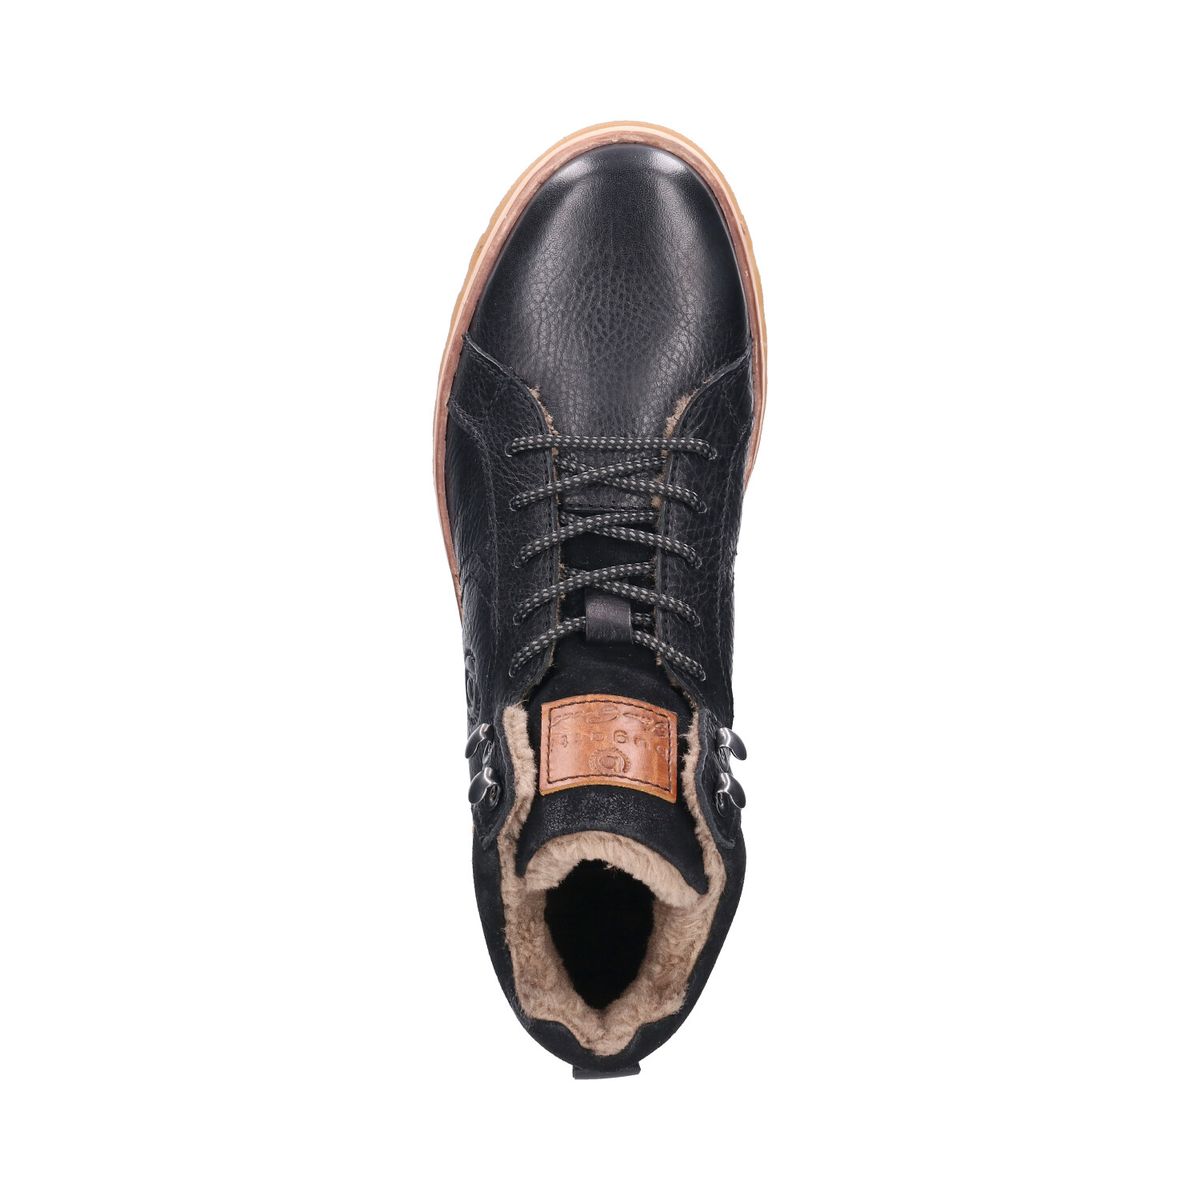 Чоловічі черевики Bugatti 79452-1200/1000 Чорні 41